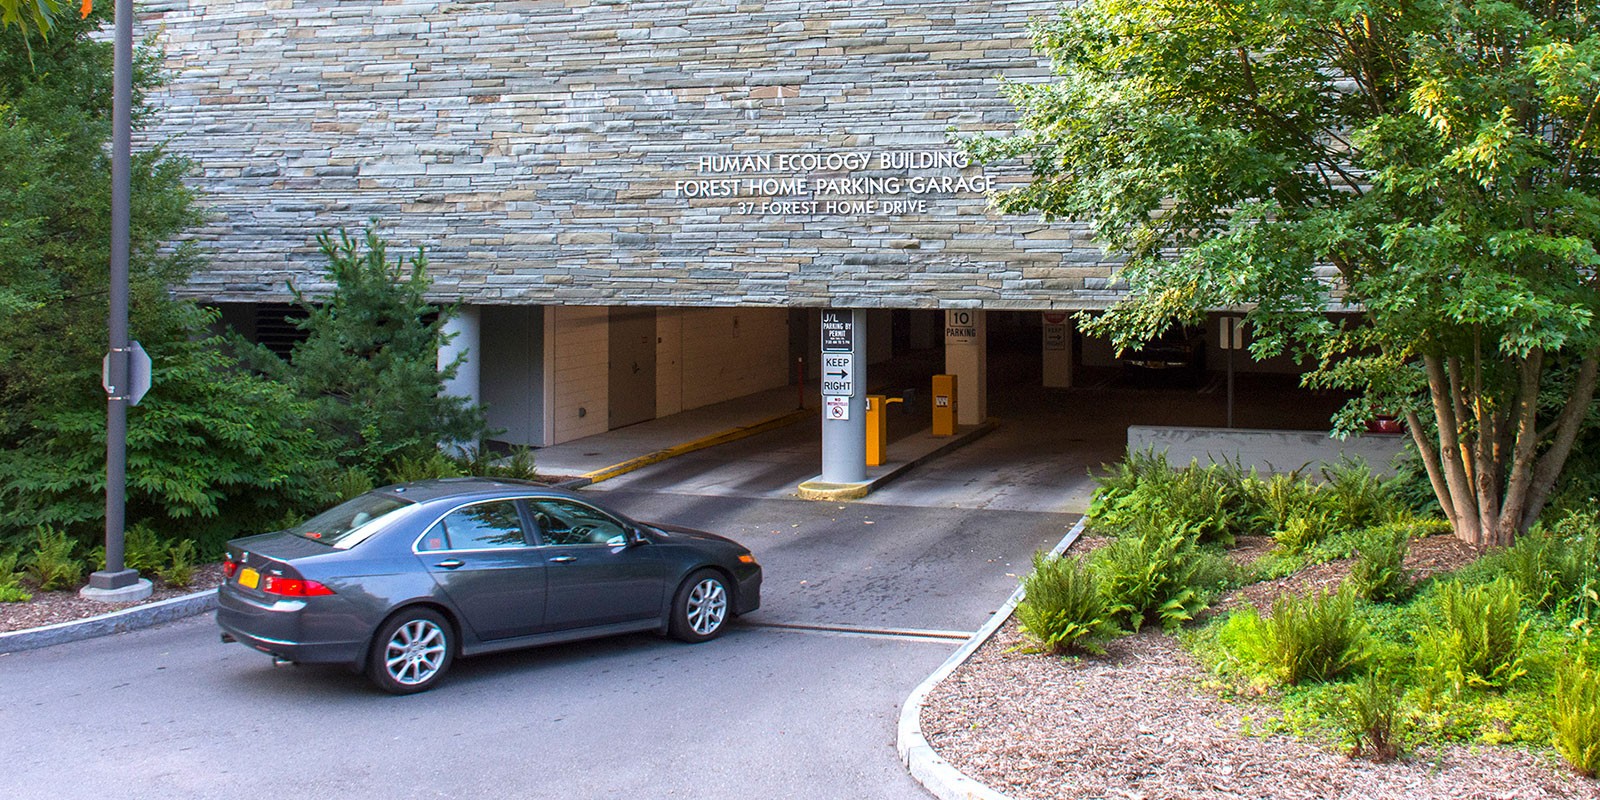 Forest Home parking garage entrance